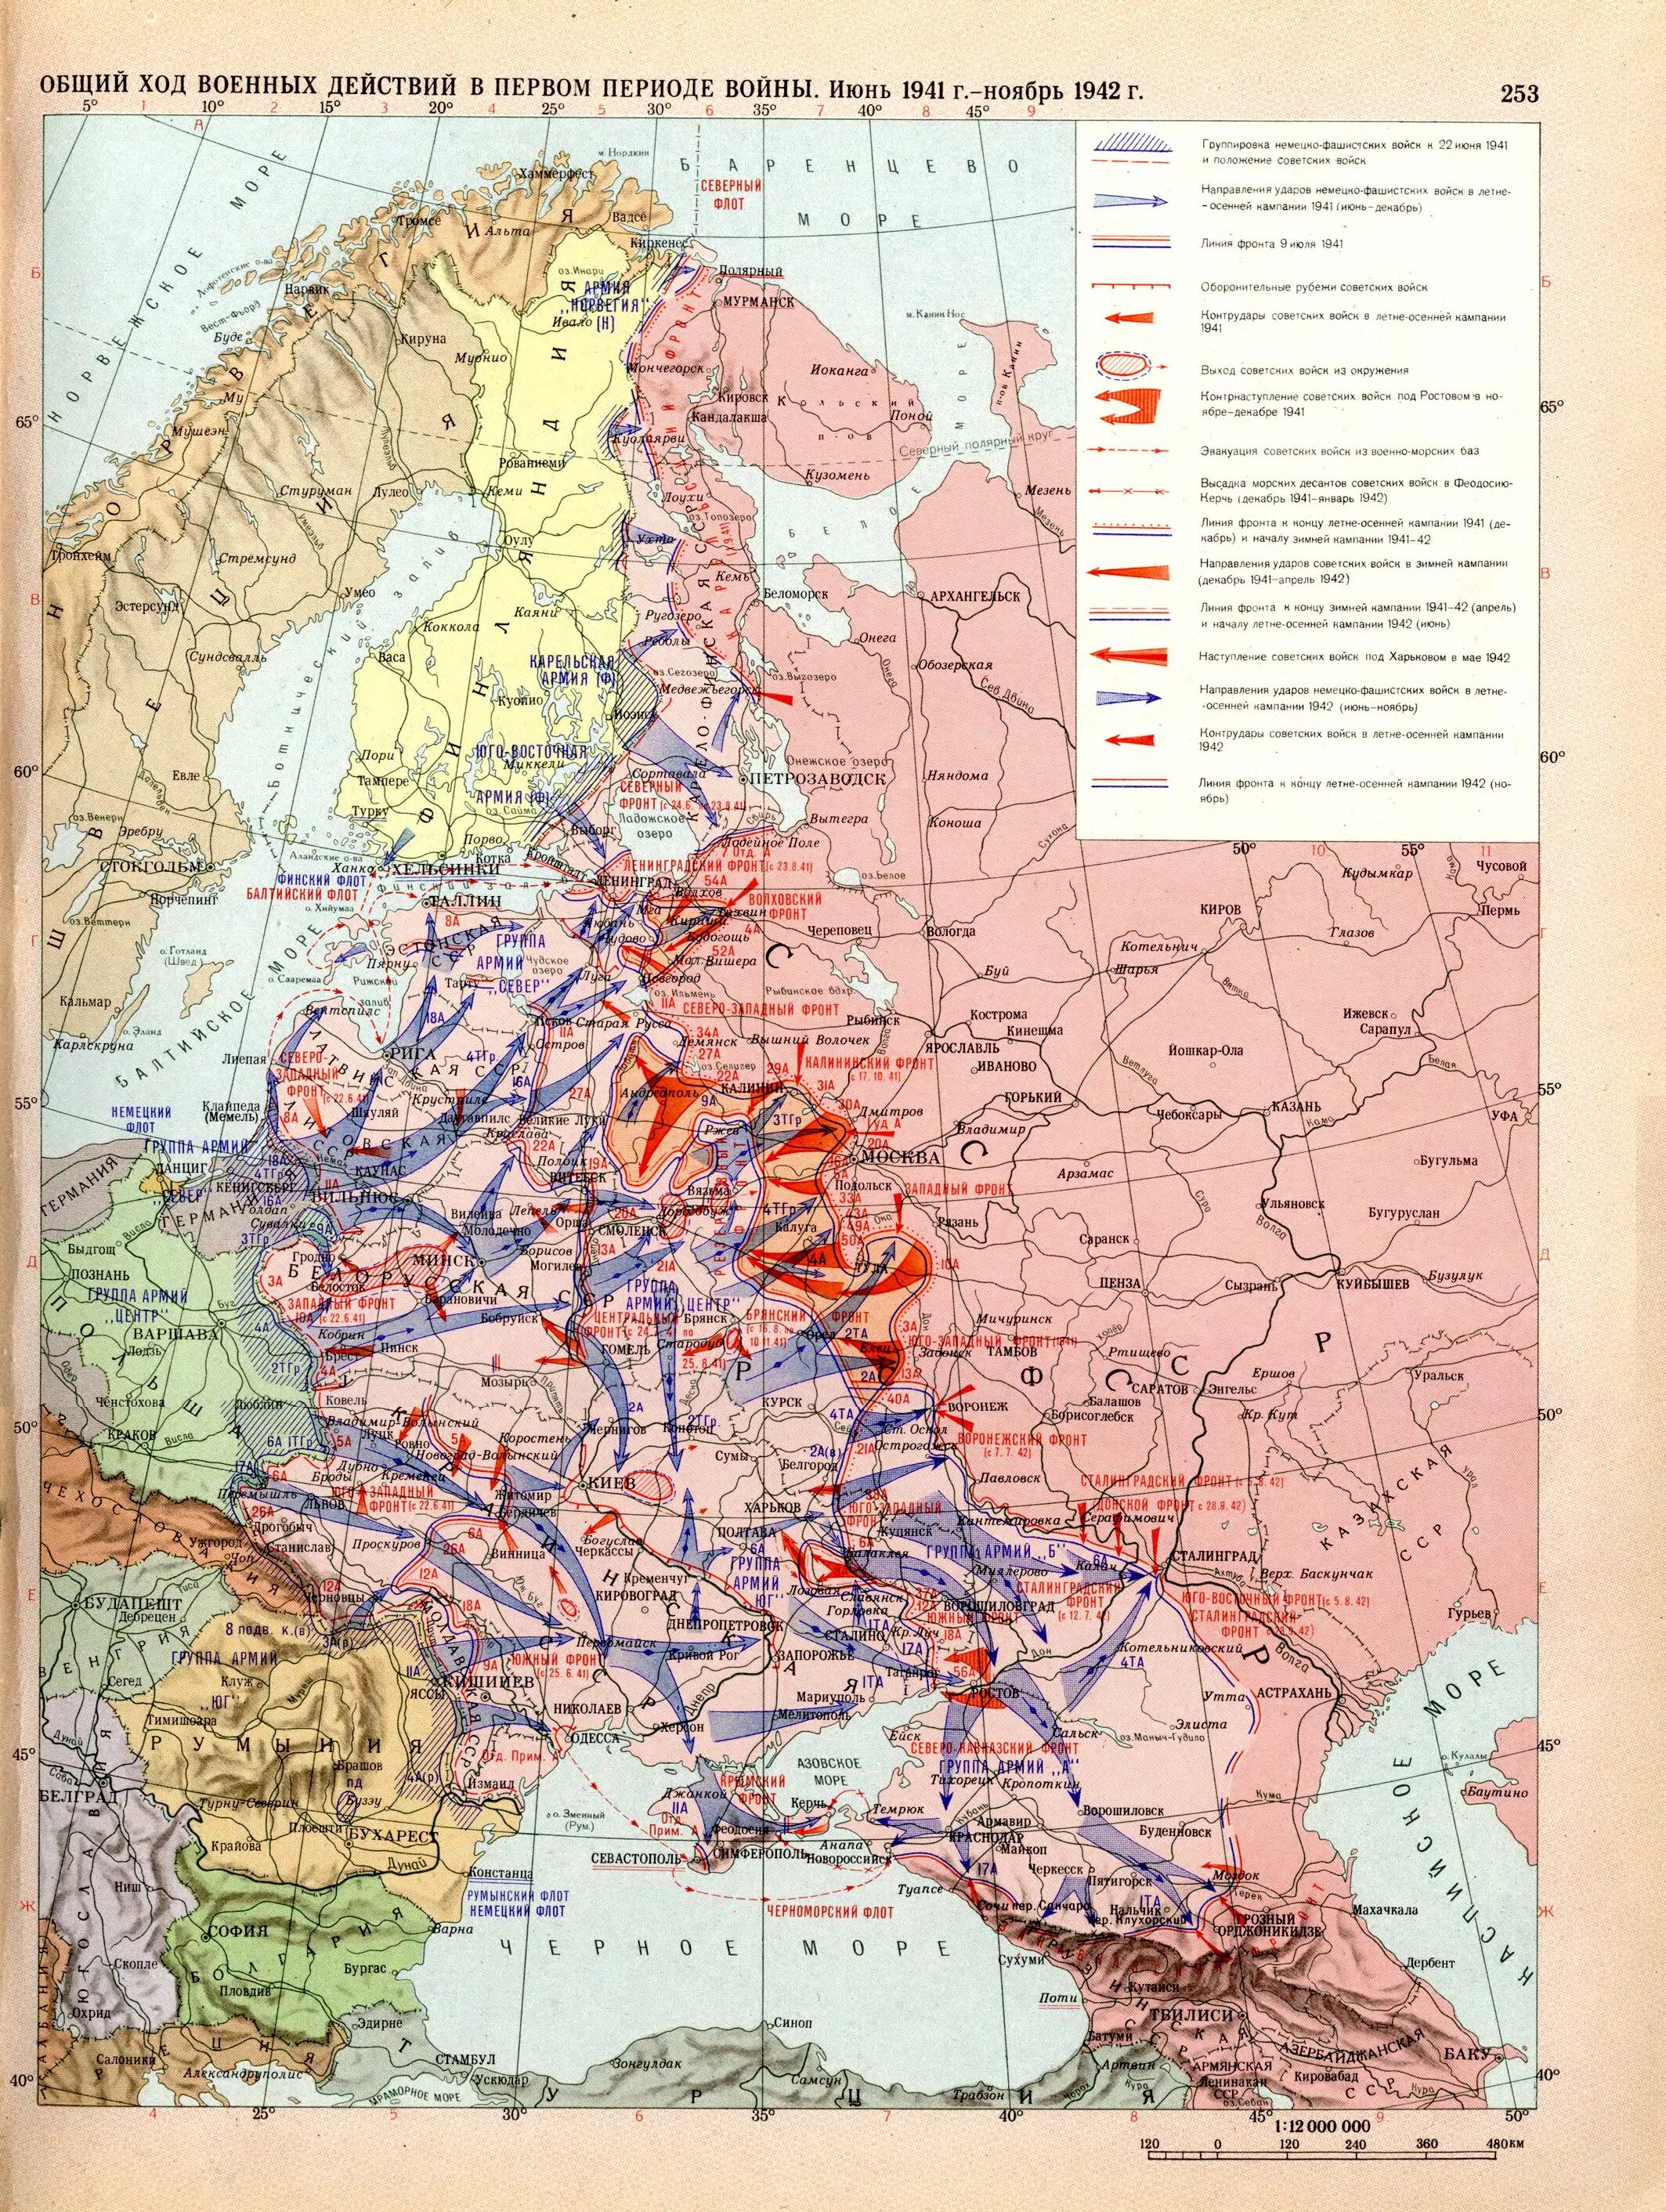 Карты 1941 г. Общий ход военных действий в 1941 1942 карта. Карта восточного фронта второй мировой войны 1941.